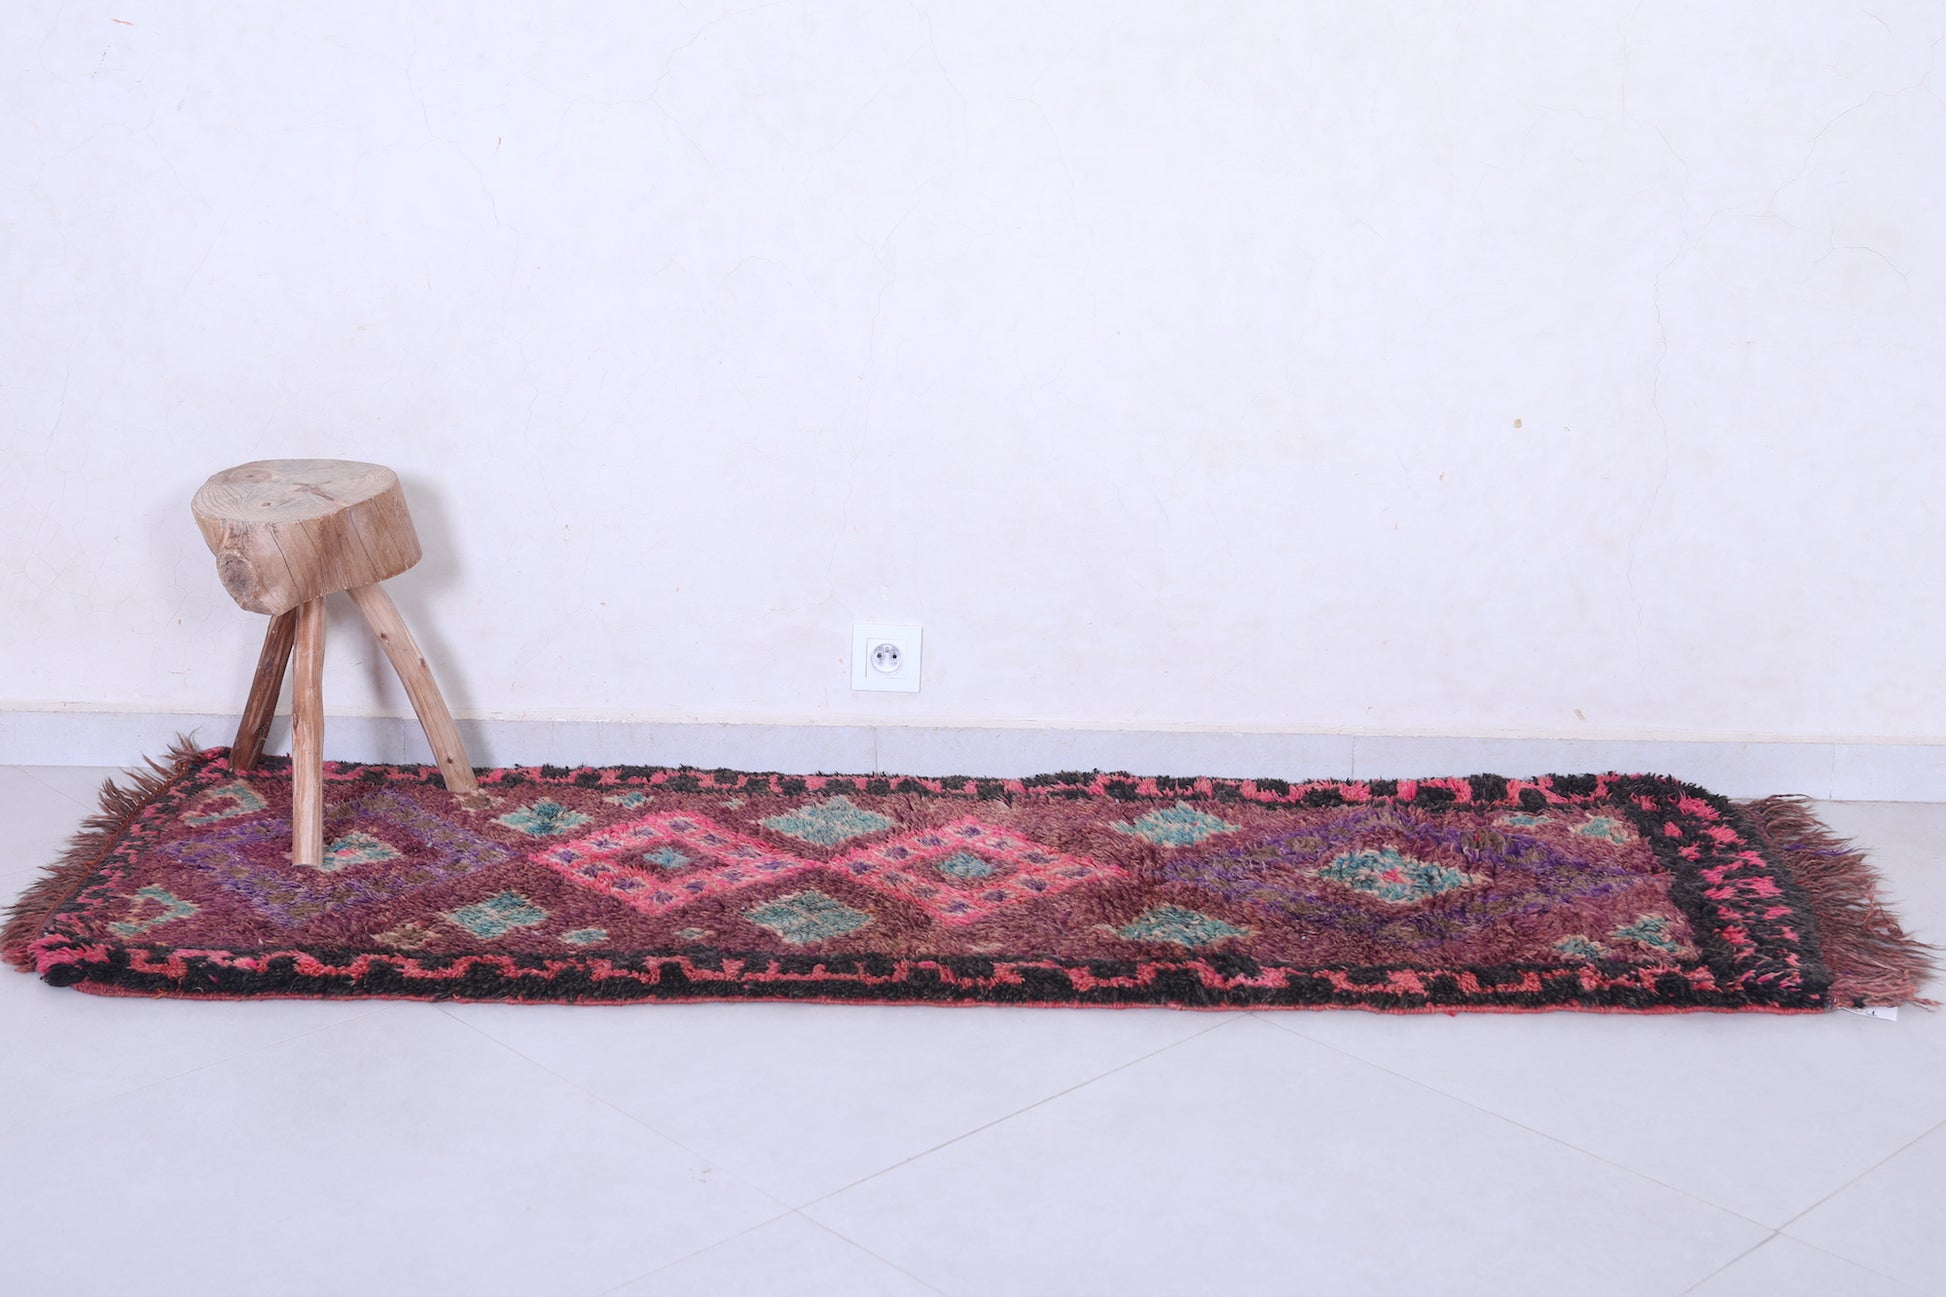 Vintage handmade moroccan berber runner rug 2.1 FT X 6.4 FT